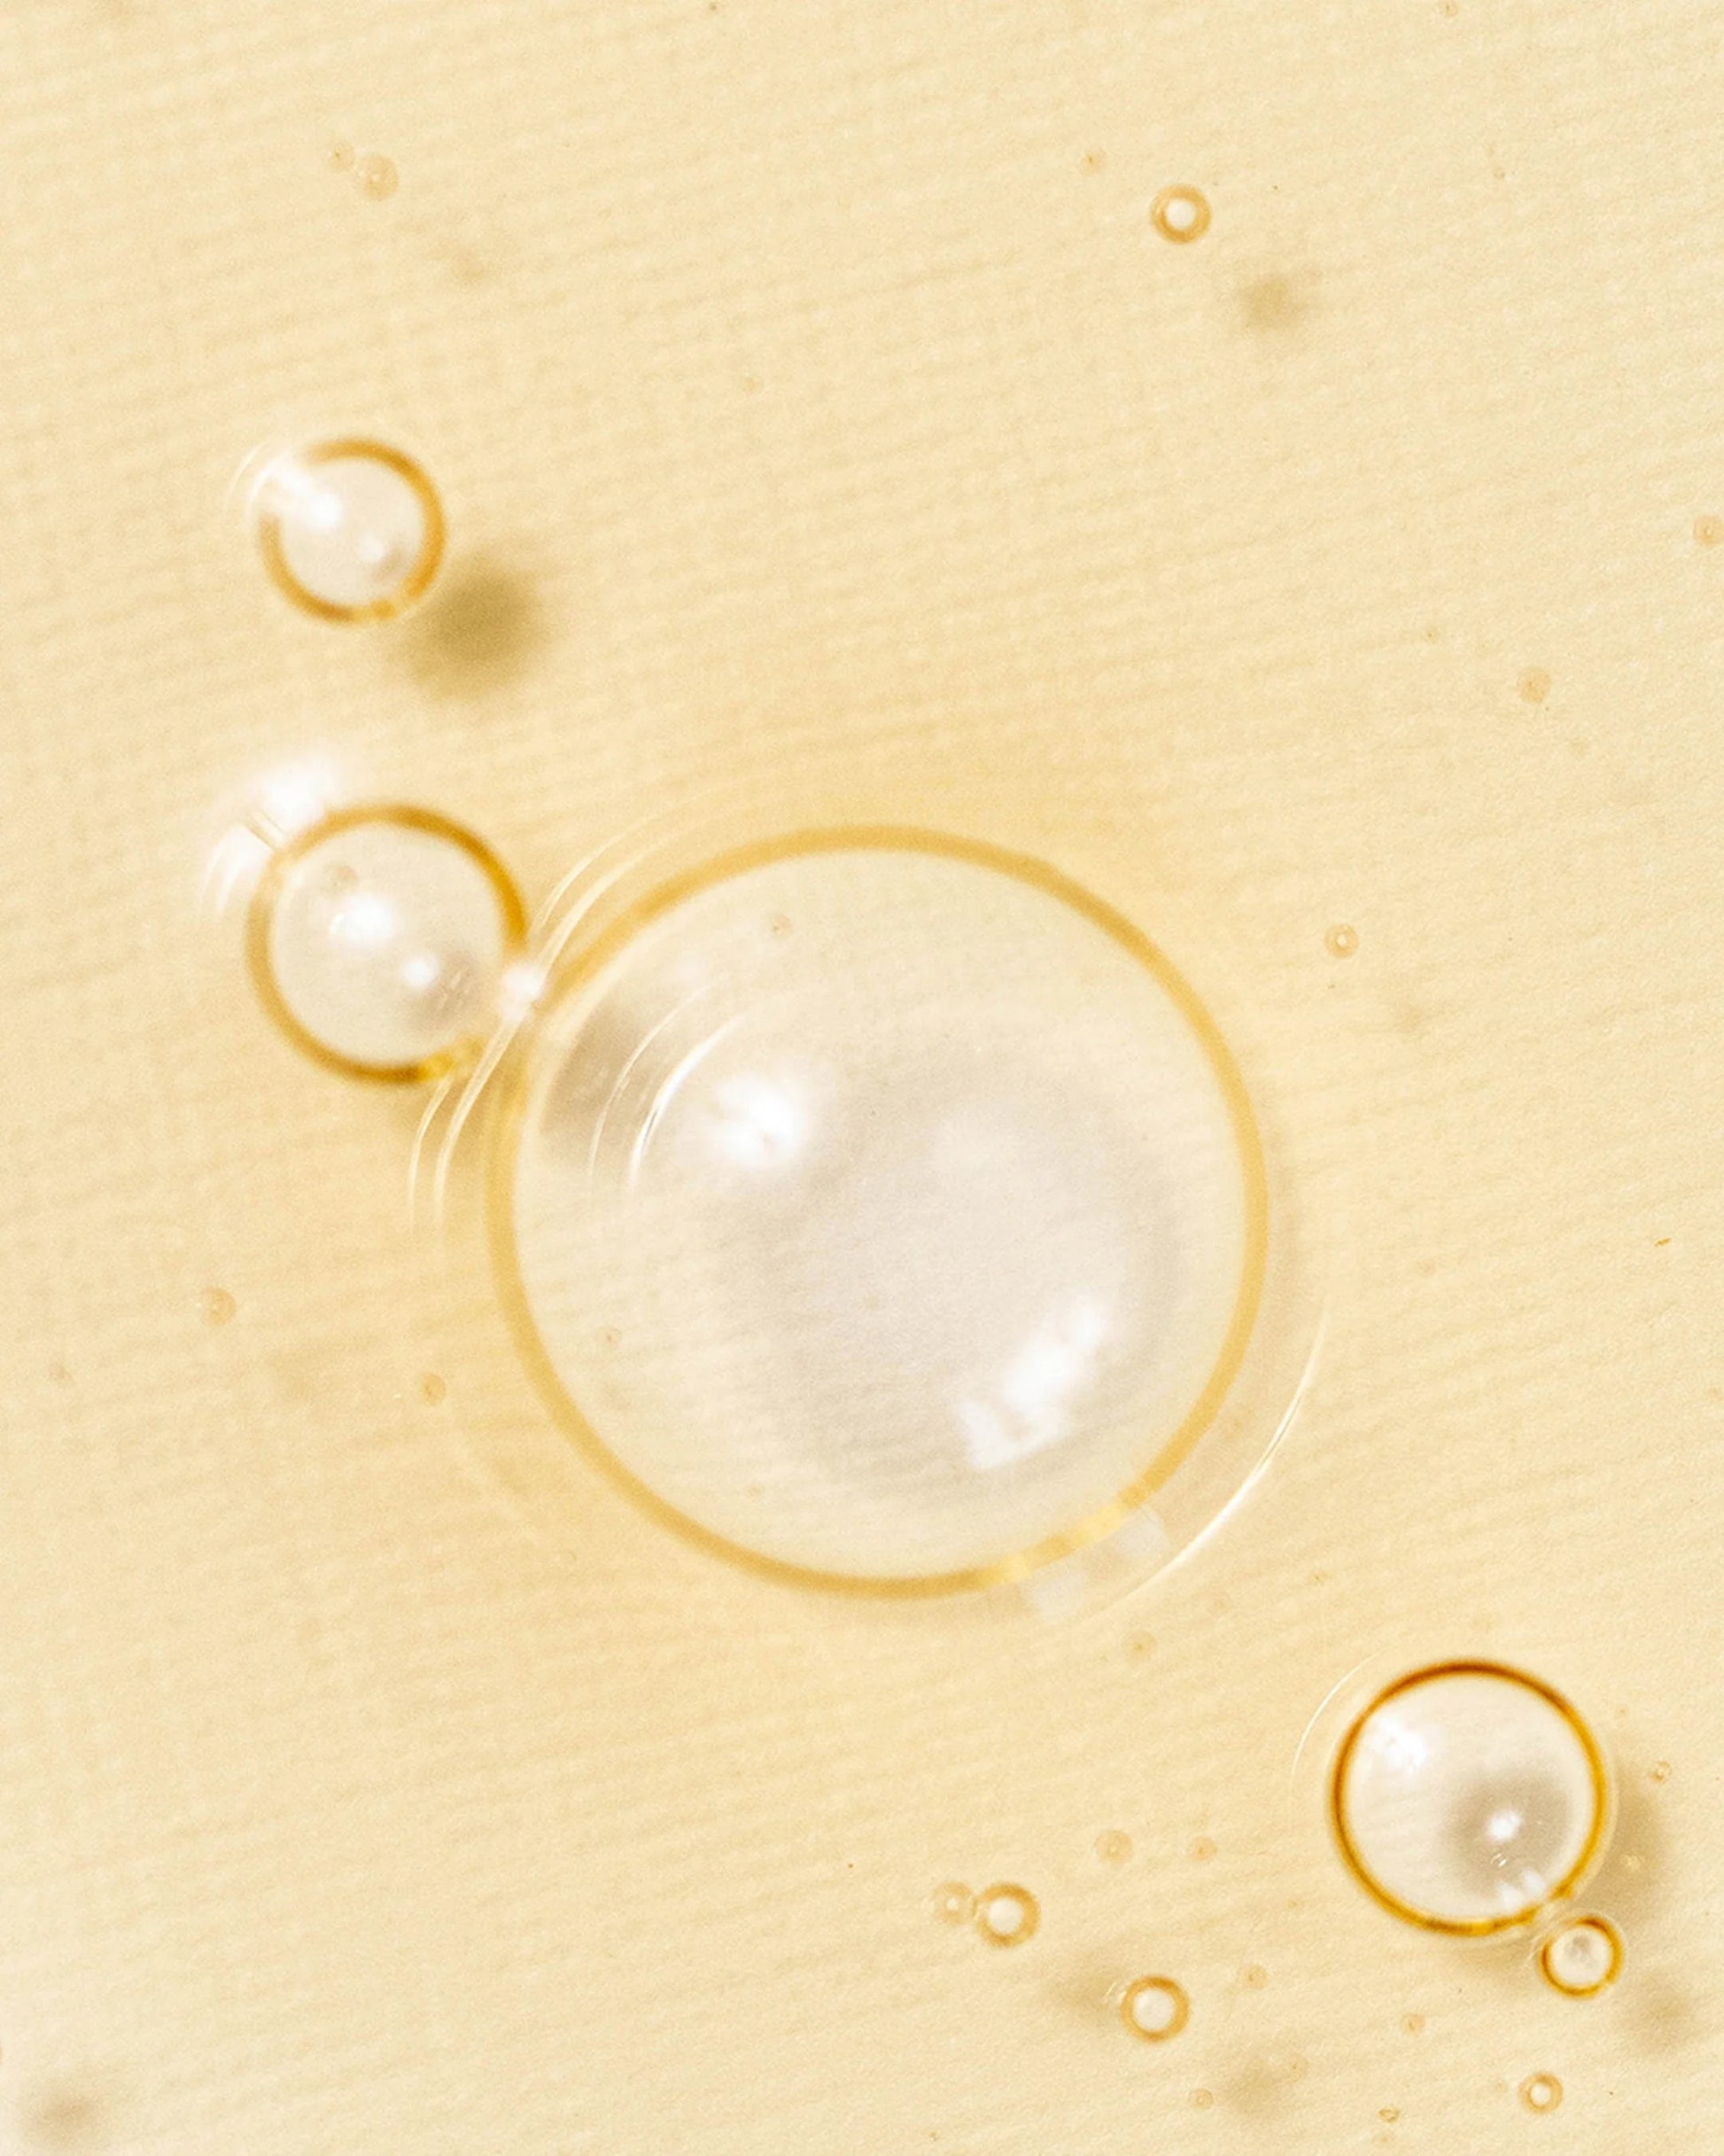 CIETTE BEAUTY - BEAUTY OF JOSEON Revive Serum Ginseng + Snail Mucin (30ml)